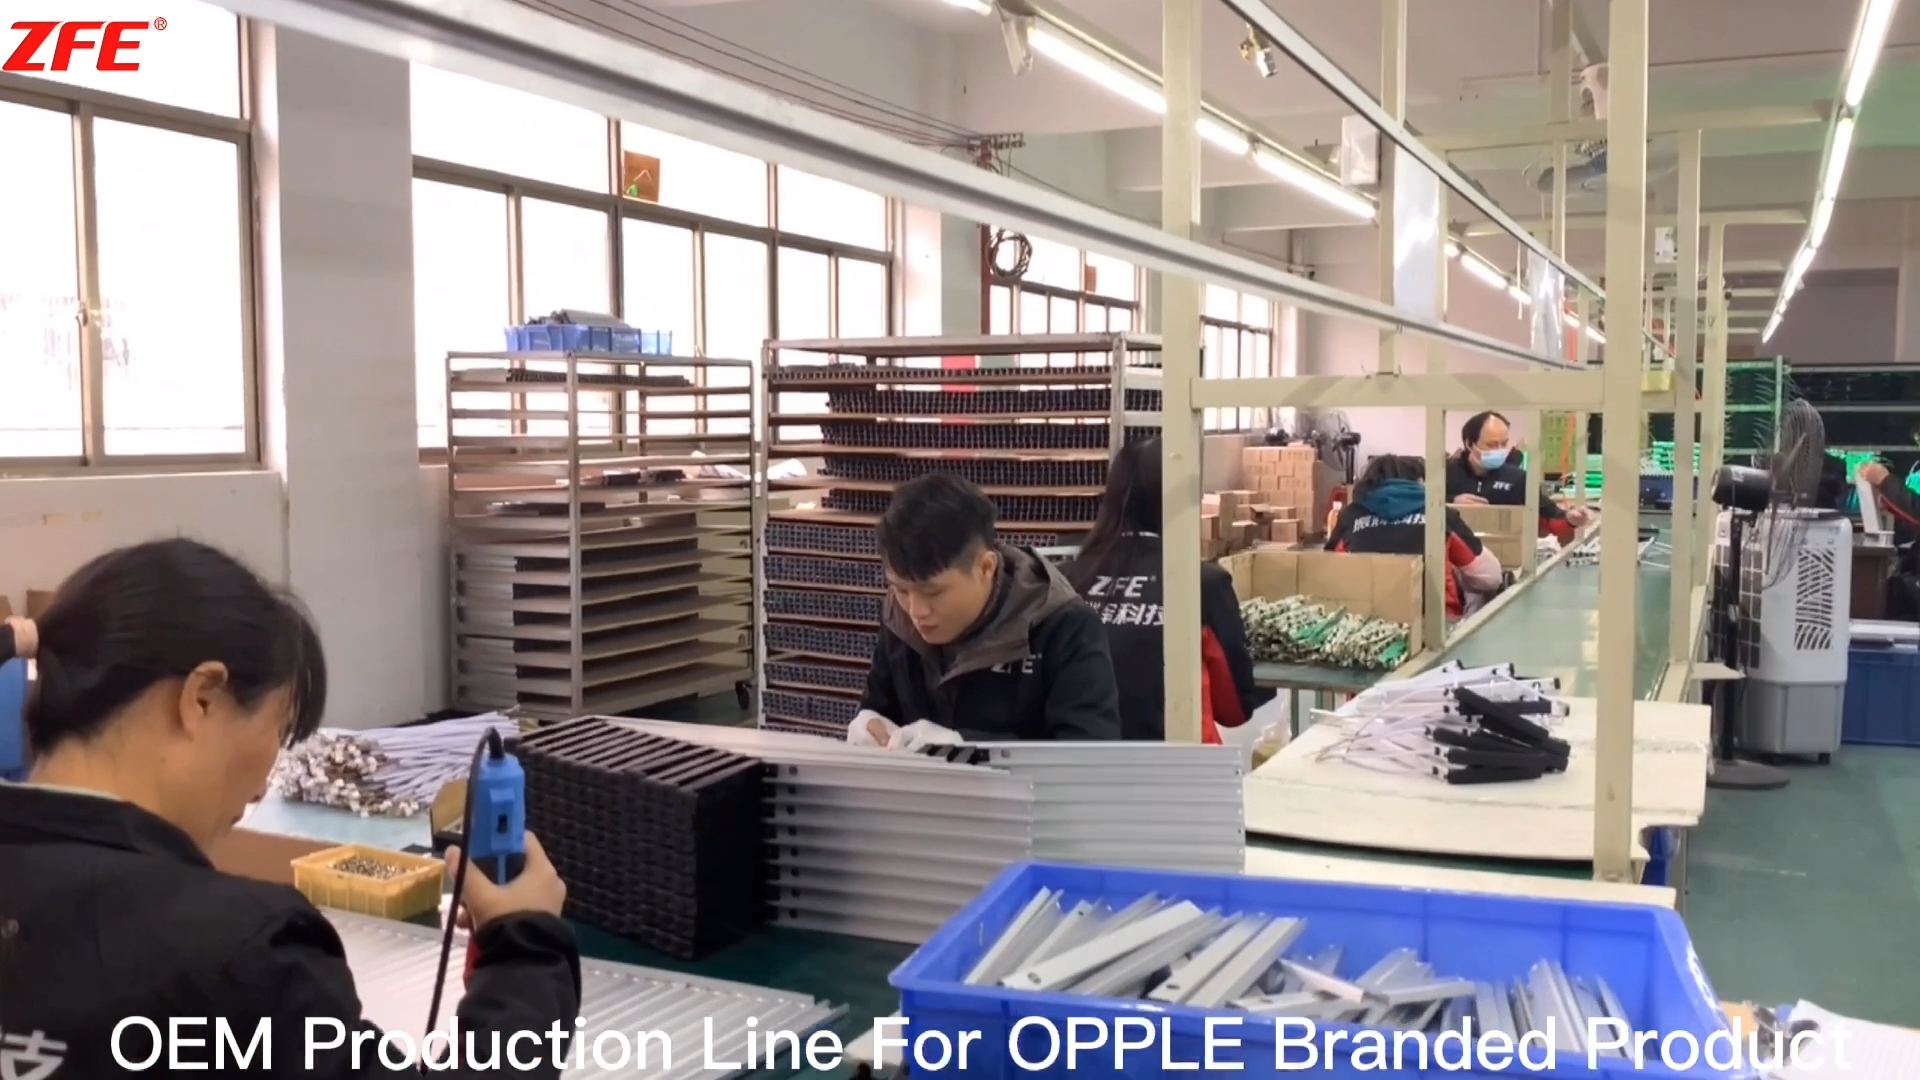 Guangdong Zhenhui Fire Technology компаниясы шығарған OPPLE брендті өнімге арналған арнайы OEM өндірістік желісі